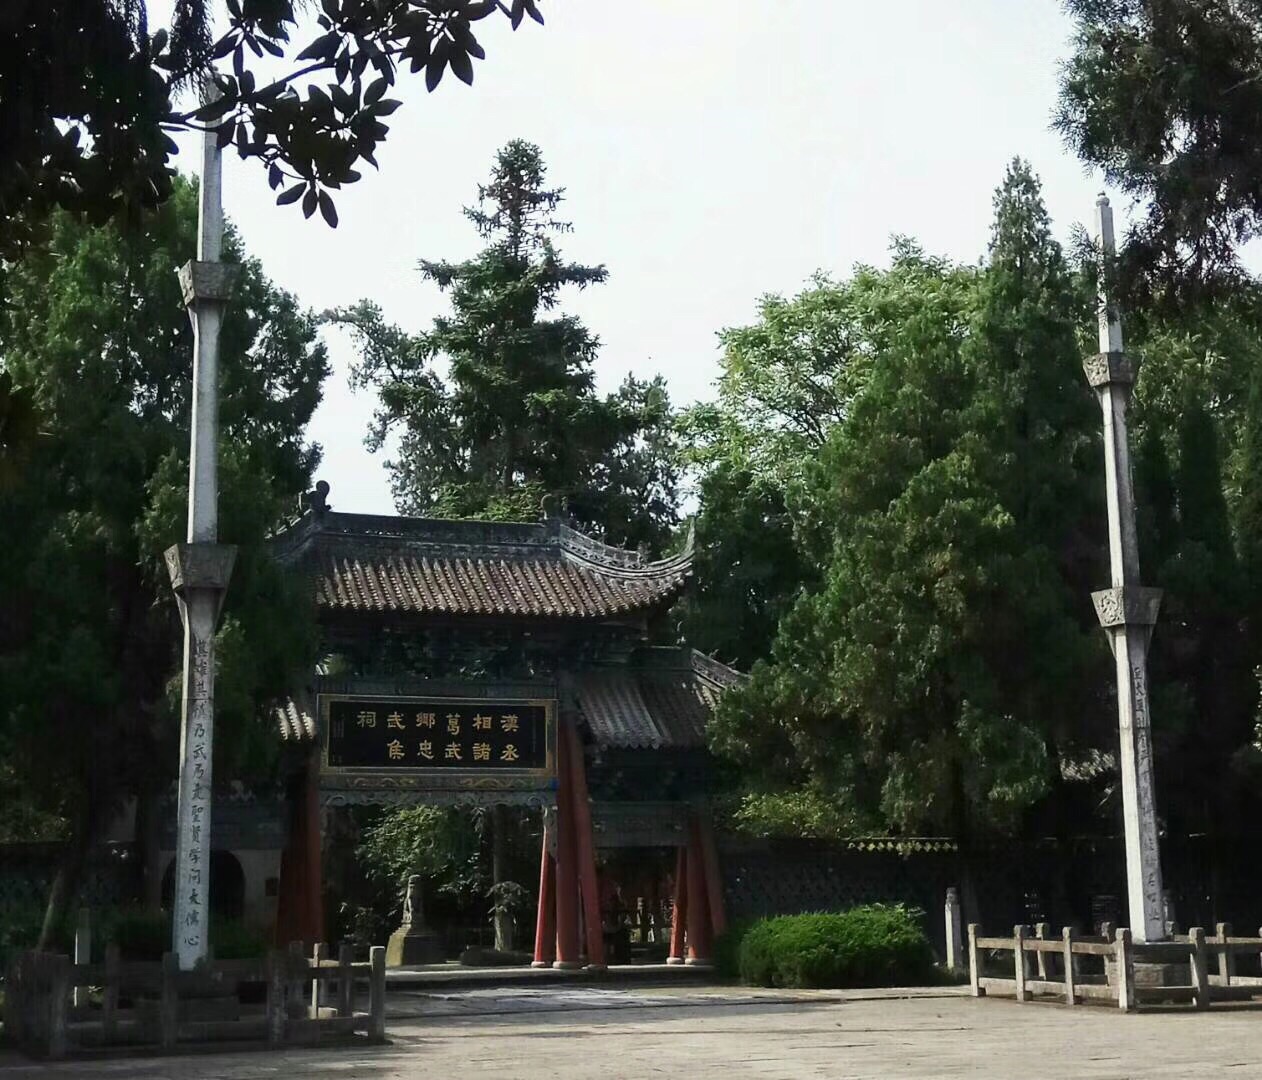 勉县武侯祠博物馆勉县武侯祠博物馆Wuhou Temple